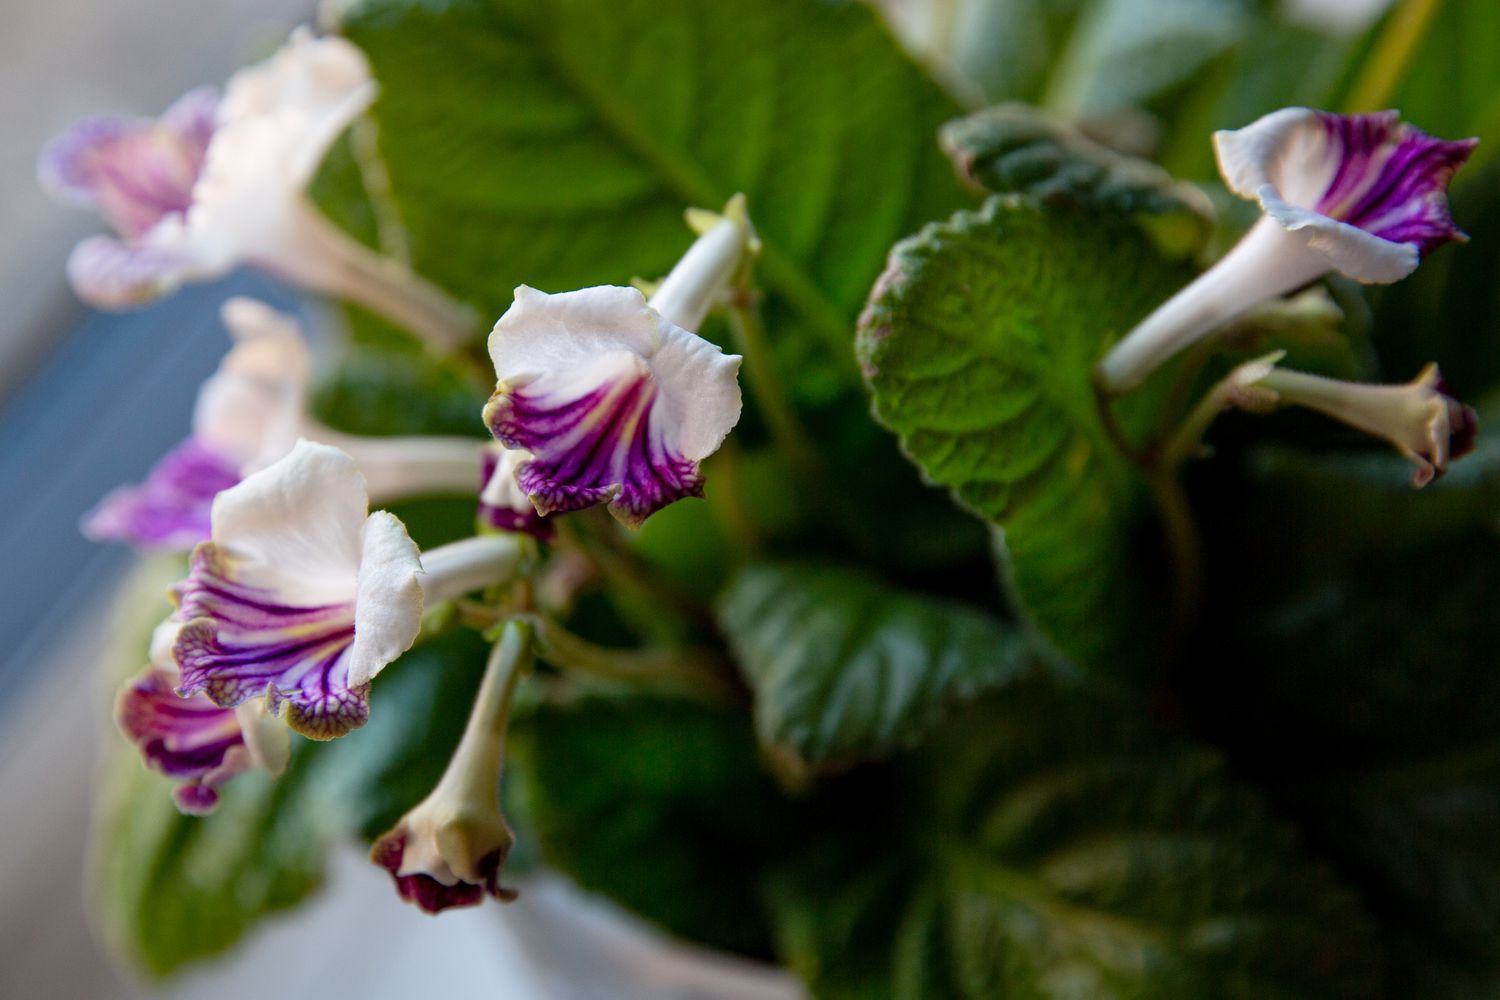 Streptocarpus-Pflanze mit weißen und violetten Lockenblüten und Blättern in Großaufnahme